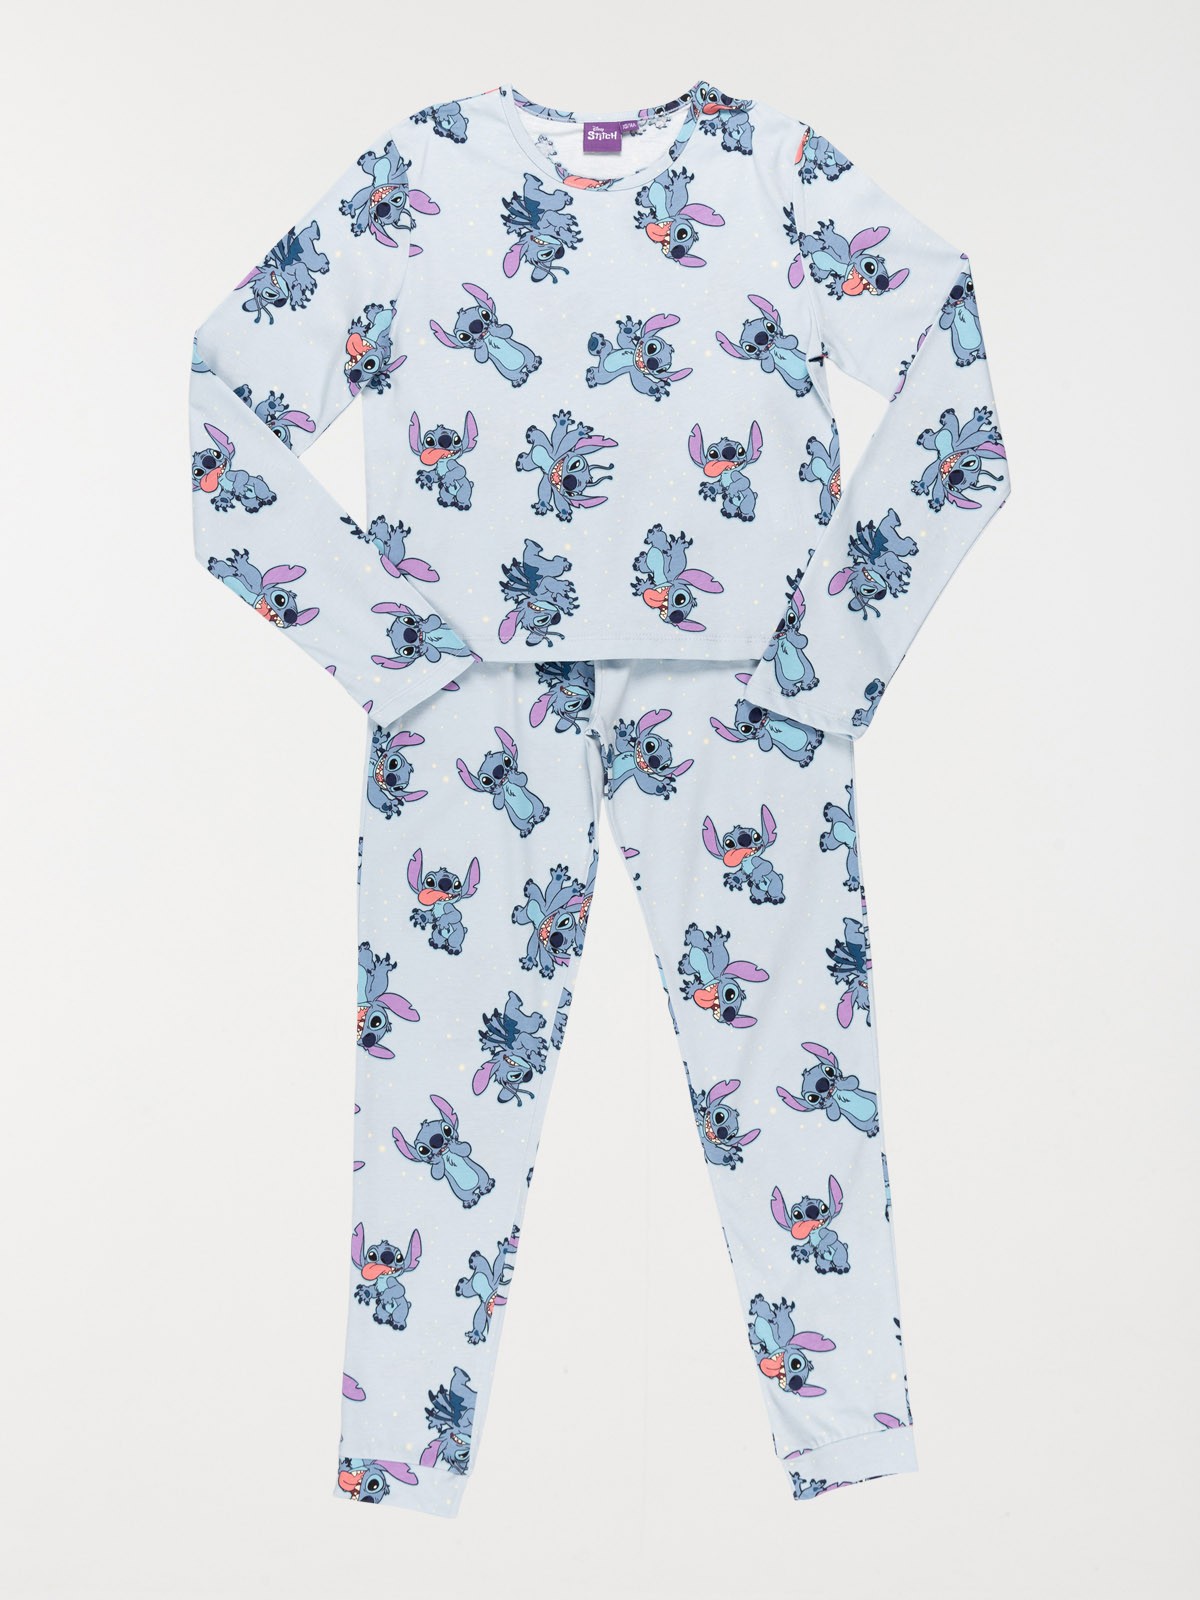 Stitch - Ensemble de pyjama femme - T-shirt / Short (Taille M)